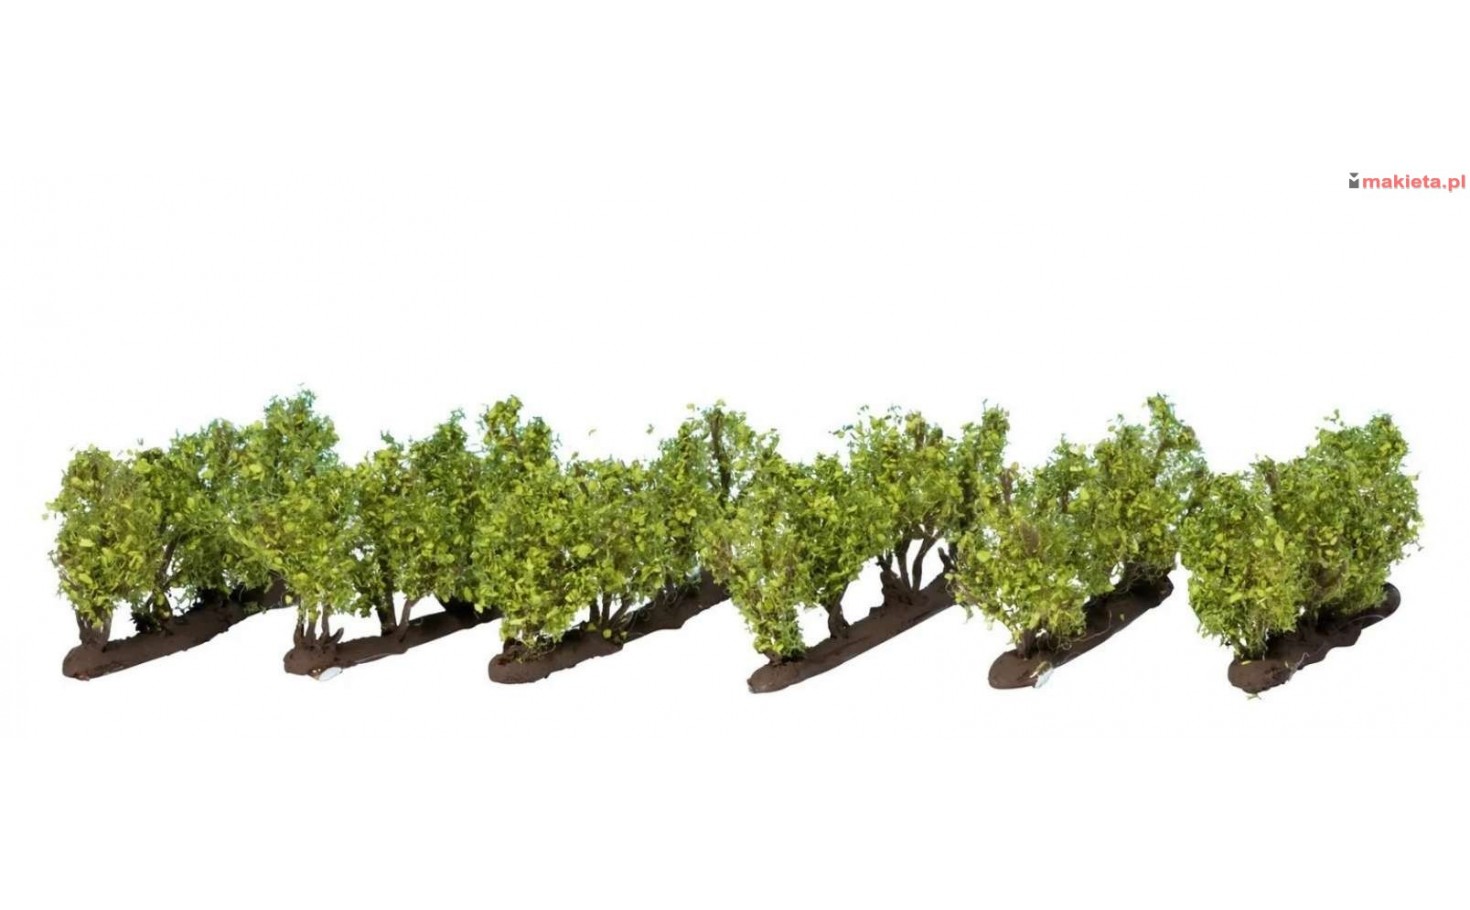 Noch 21540. Winorośl (lub krzewy, małe drzewka), 2,2 cm, 24 sztuki